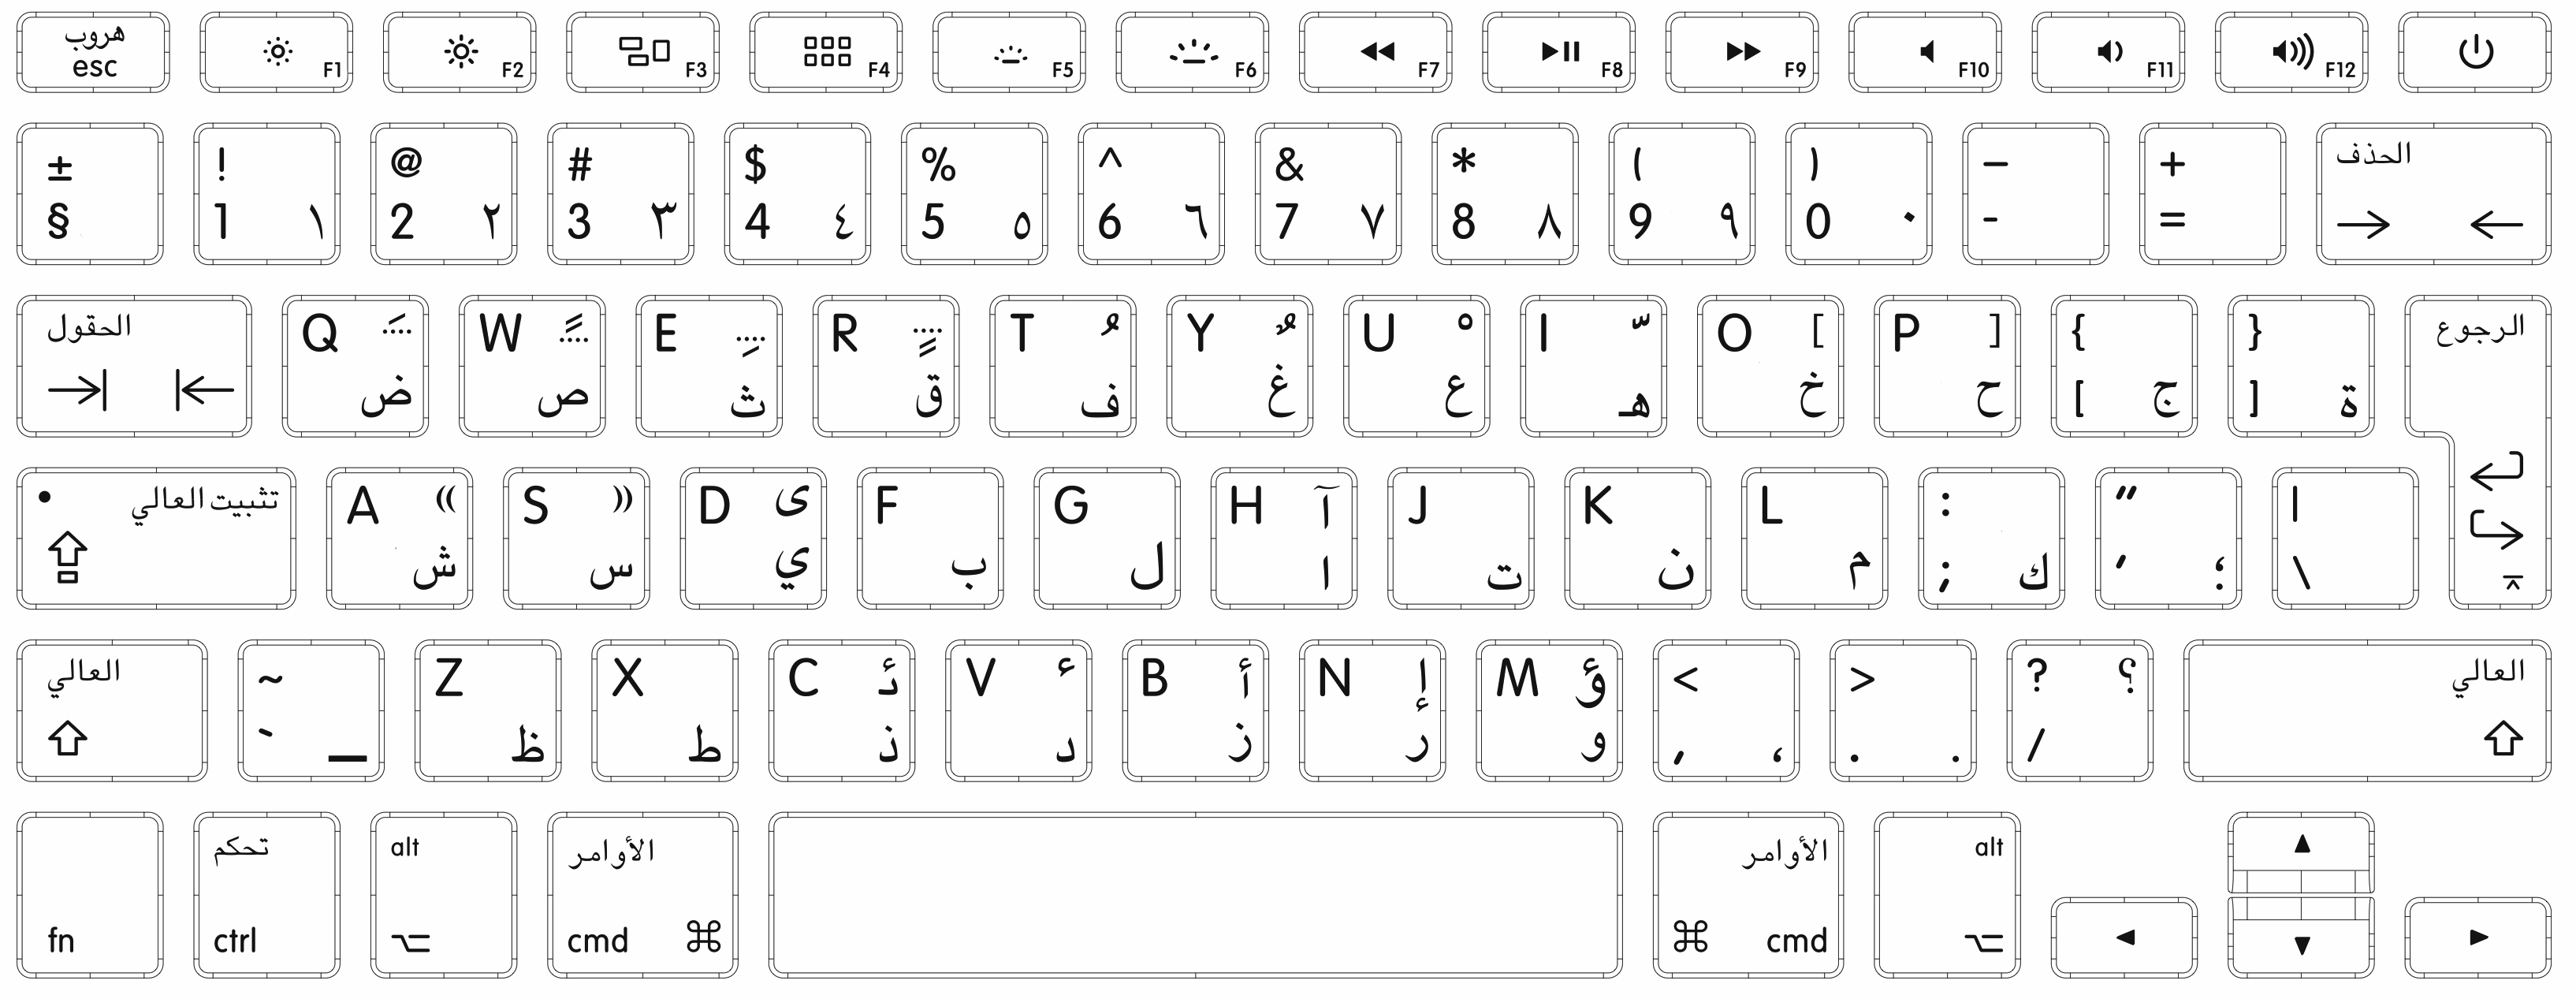 Pc Keyboard Symbols Chart